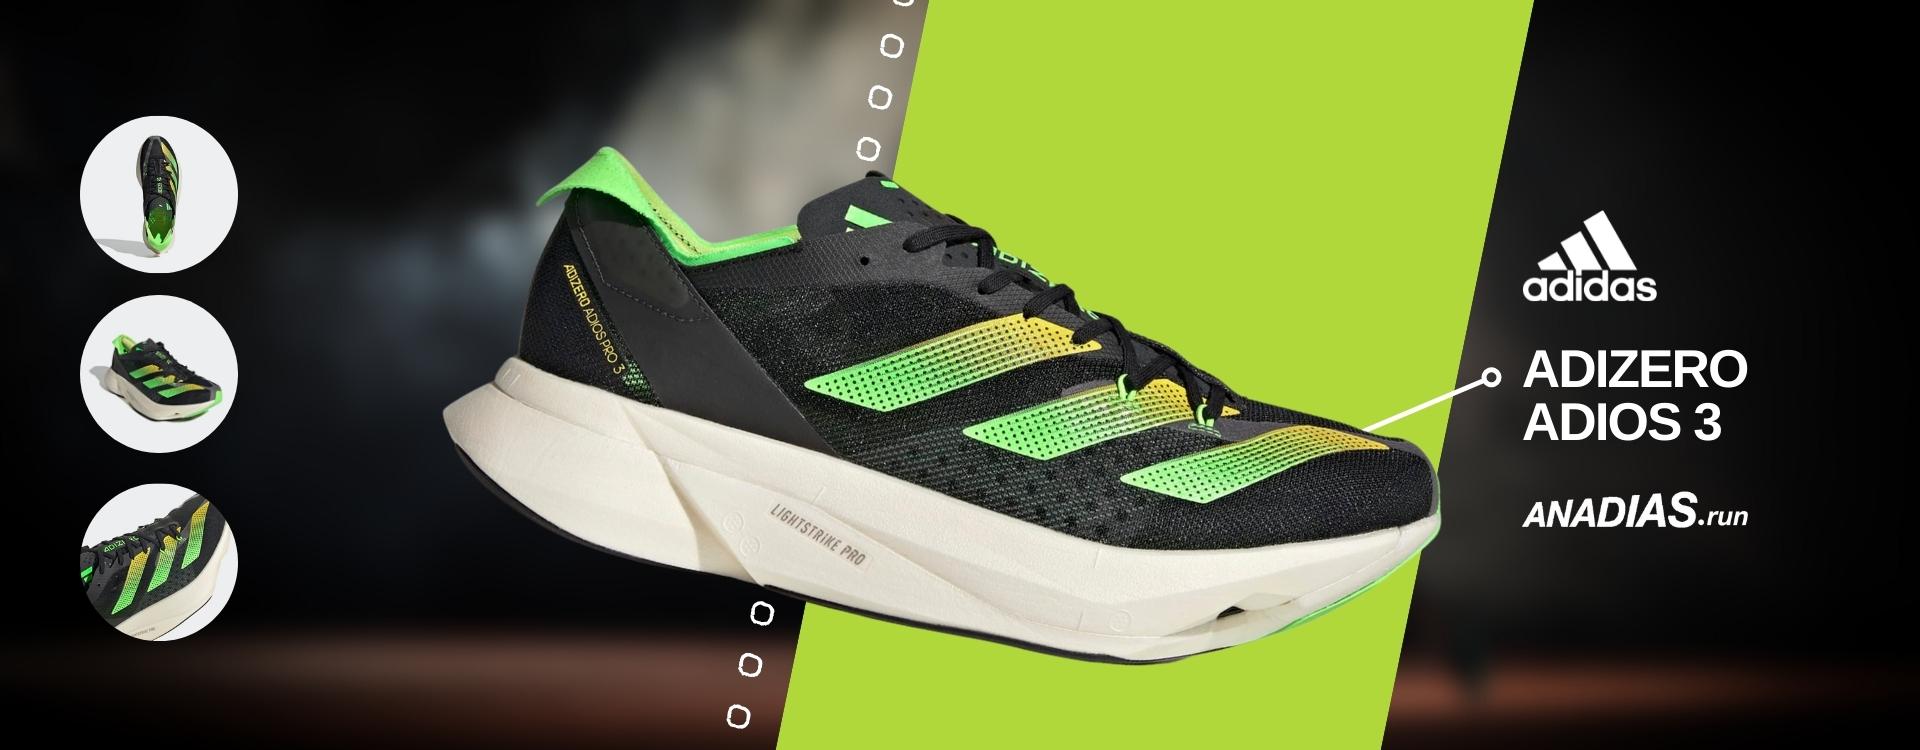 Novas Adizero Adios Pro 3 - as melhores sapatilhas running